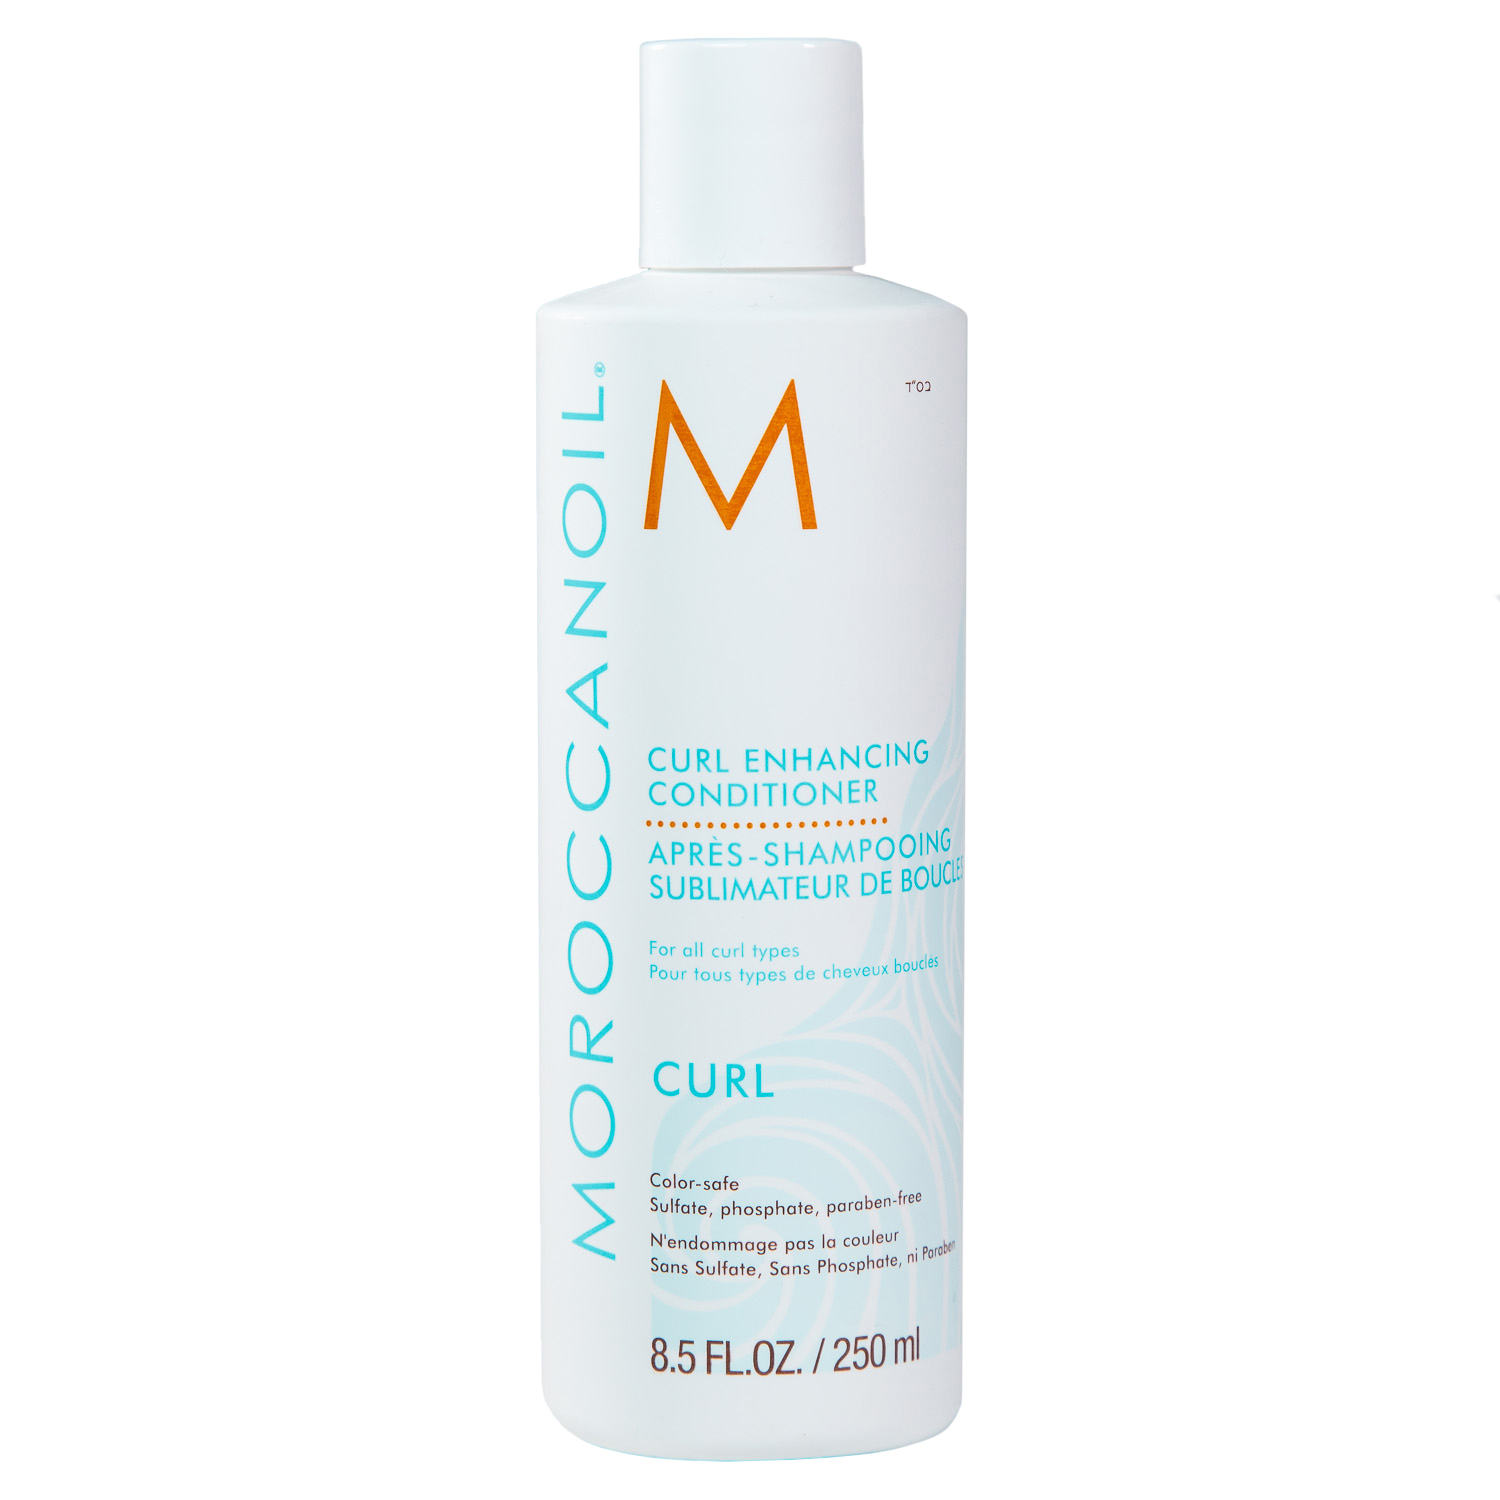 Moroccanoil Кондиционер для вьющихся волос Enhancing Conditioner, 250 мл (Moroccanoil, Curl)